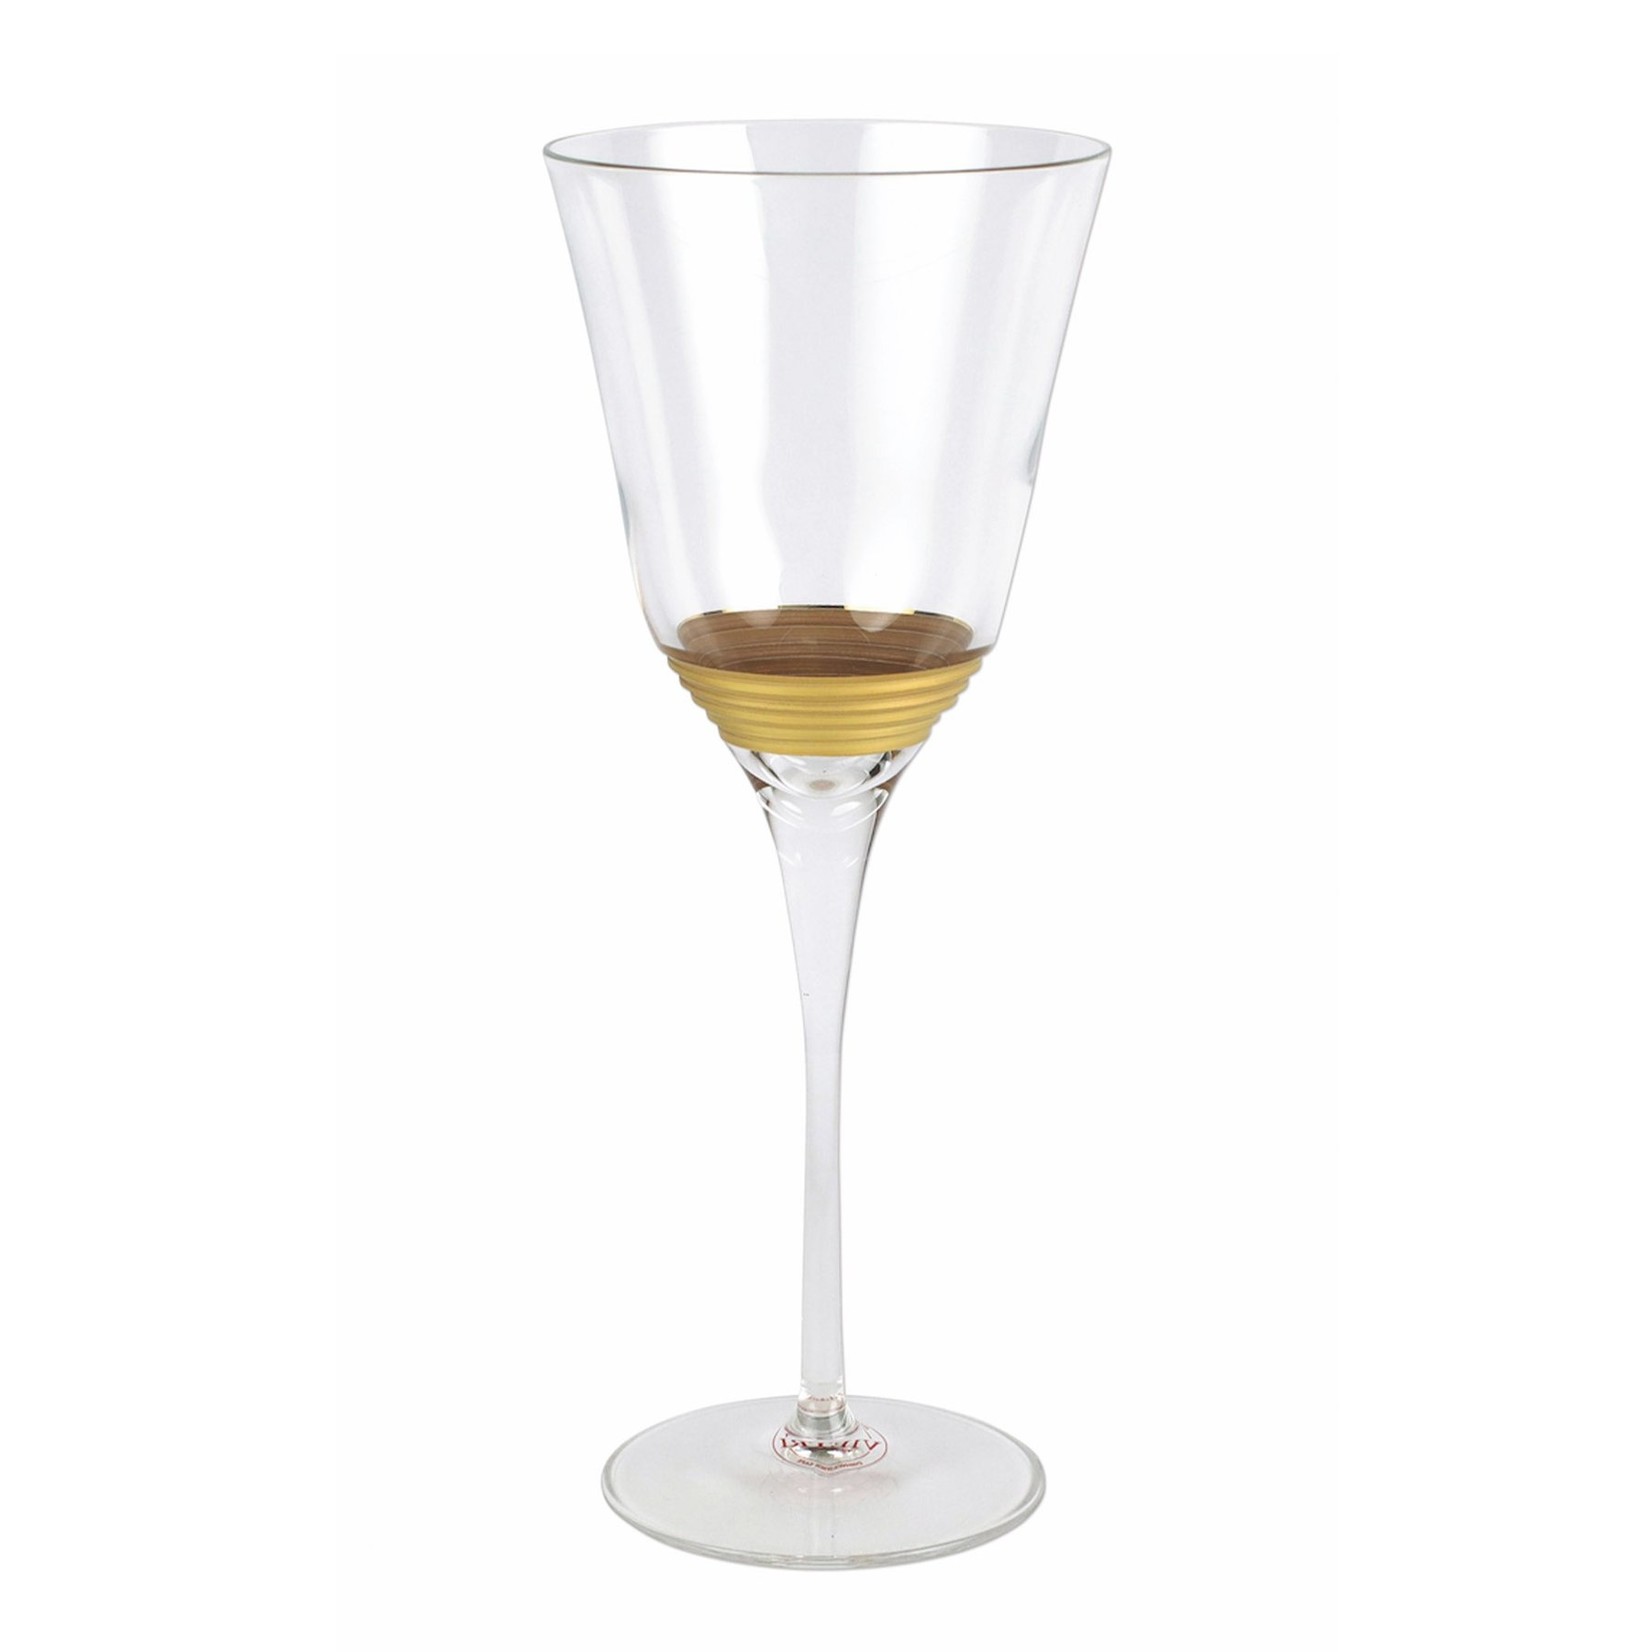 Vietri Raffaello Striped Wine Glass